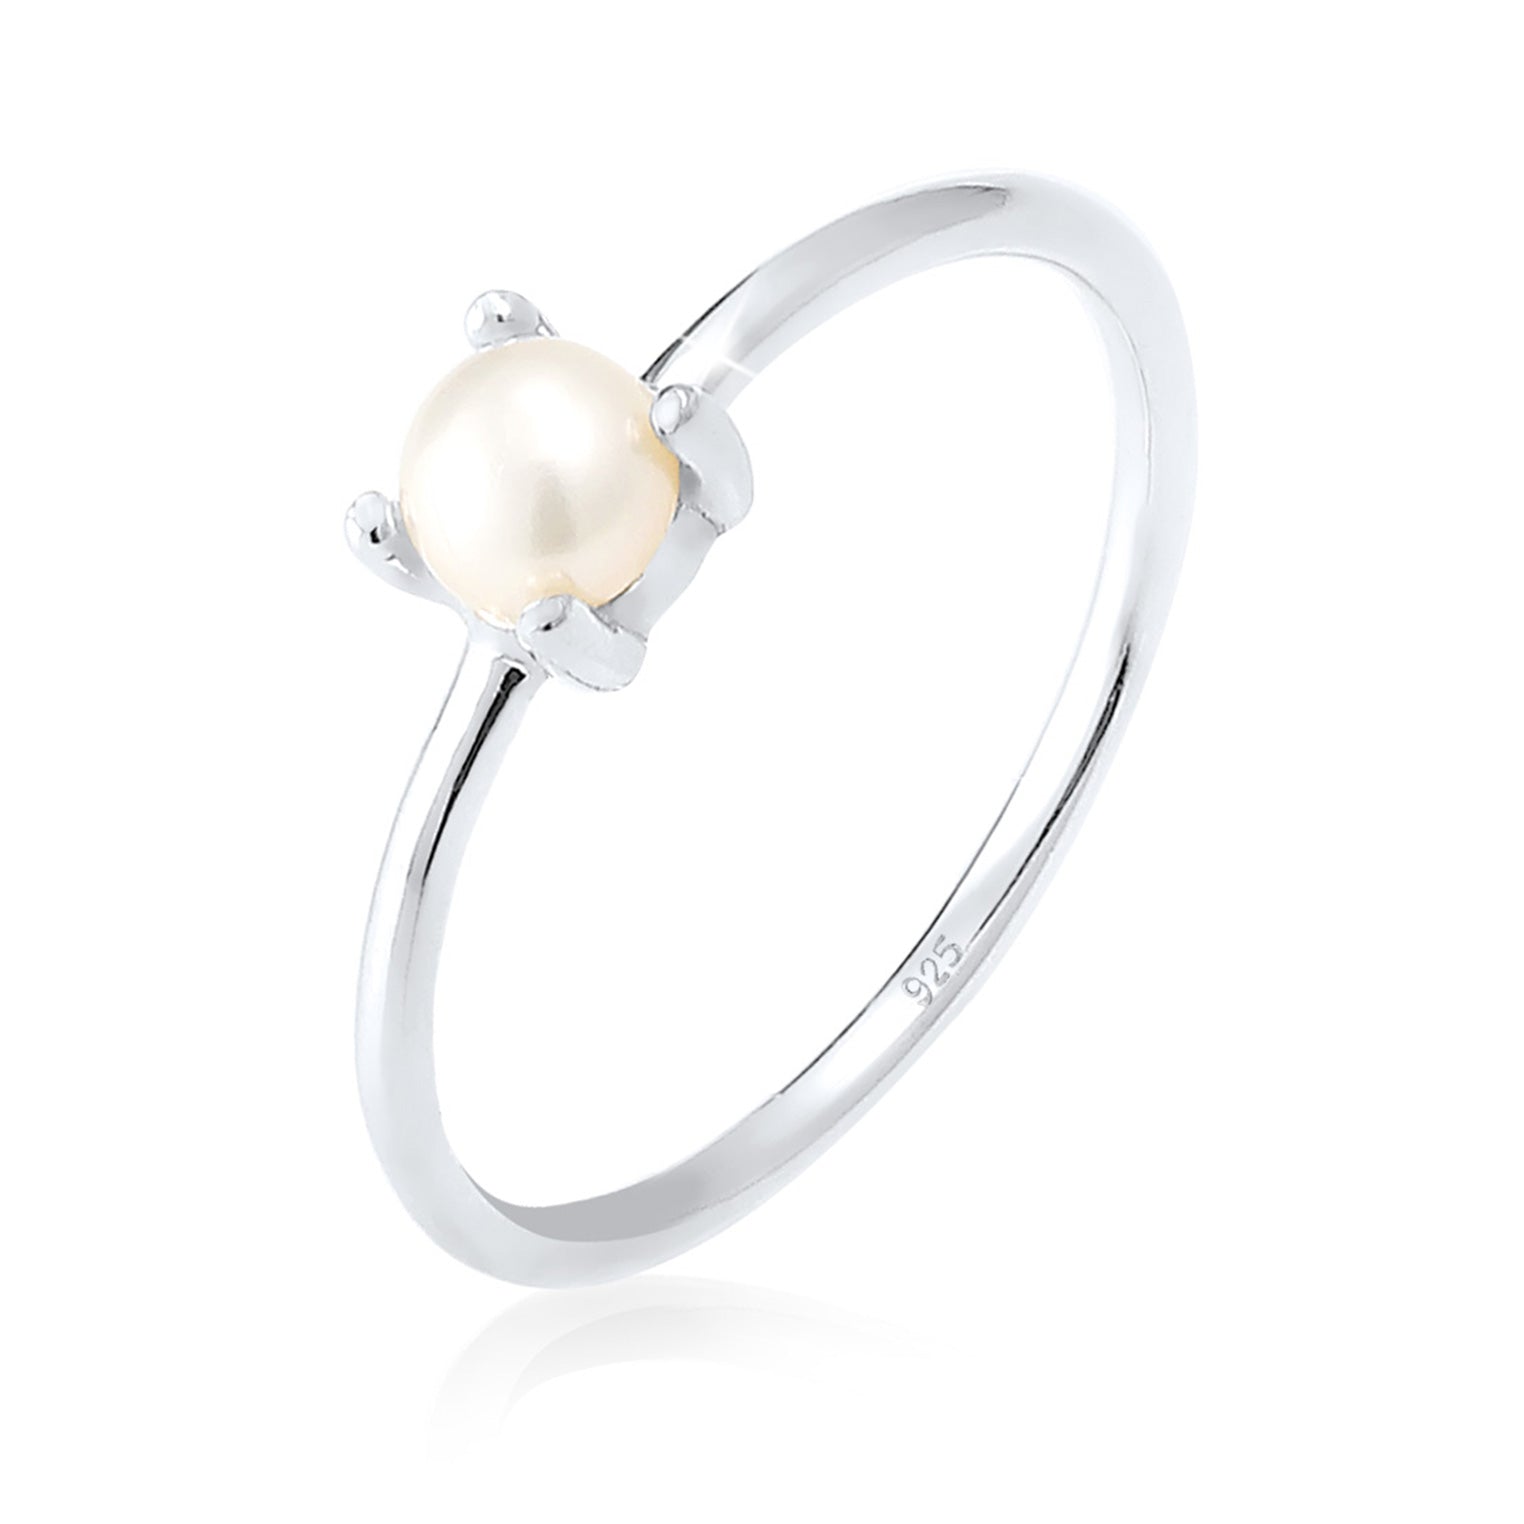 Perlenringe stilvoll und hochwertig | bei Elli – Elli Jewelry